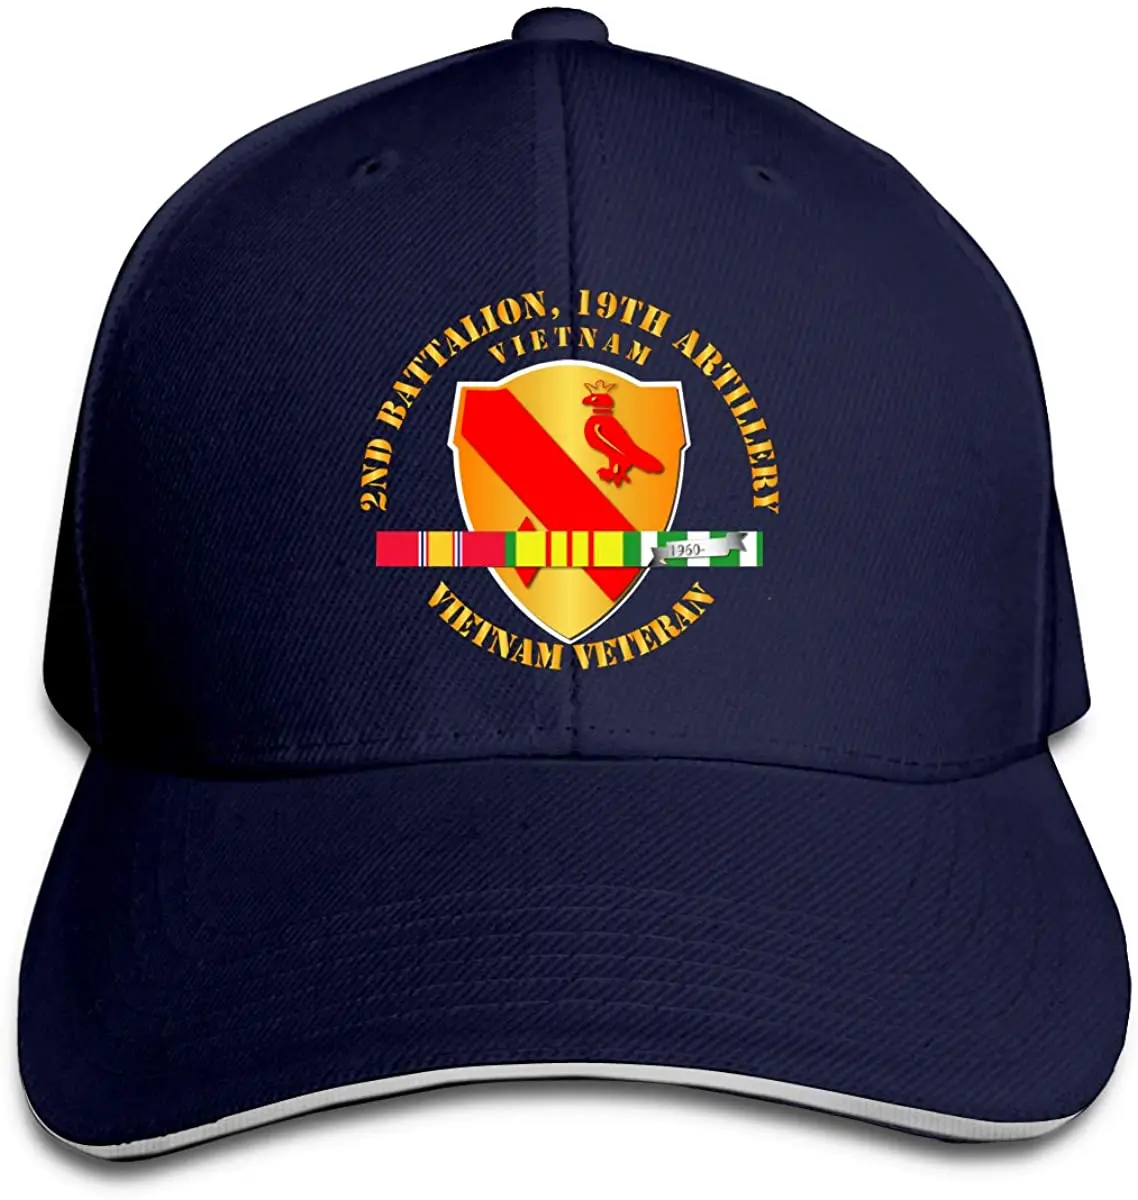 

2-я Bn 19-я артиллерия Вьетнам Ветеран SVC ленты регулируемые бейсболки винтажная сэндвич шляпа